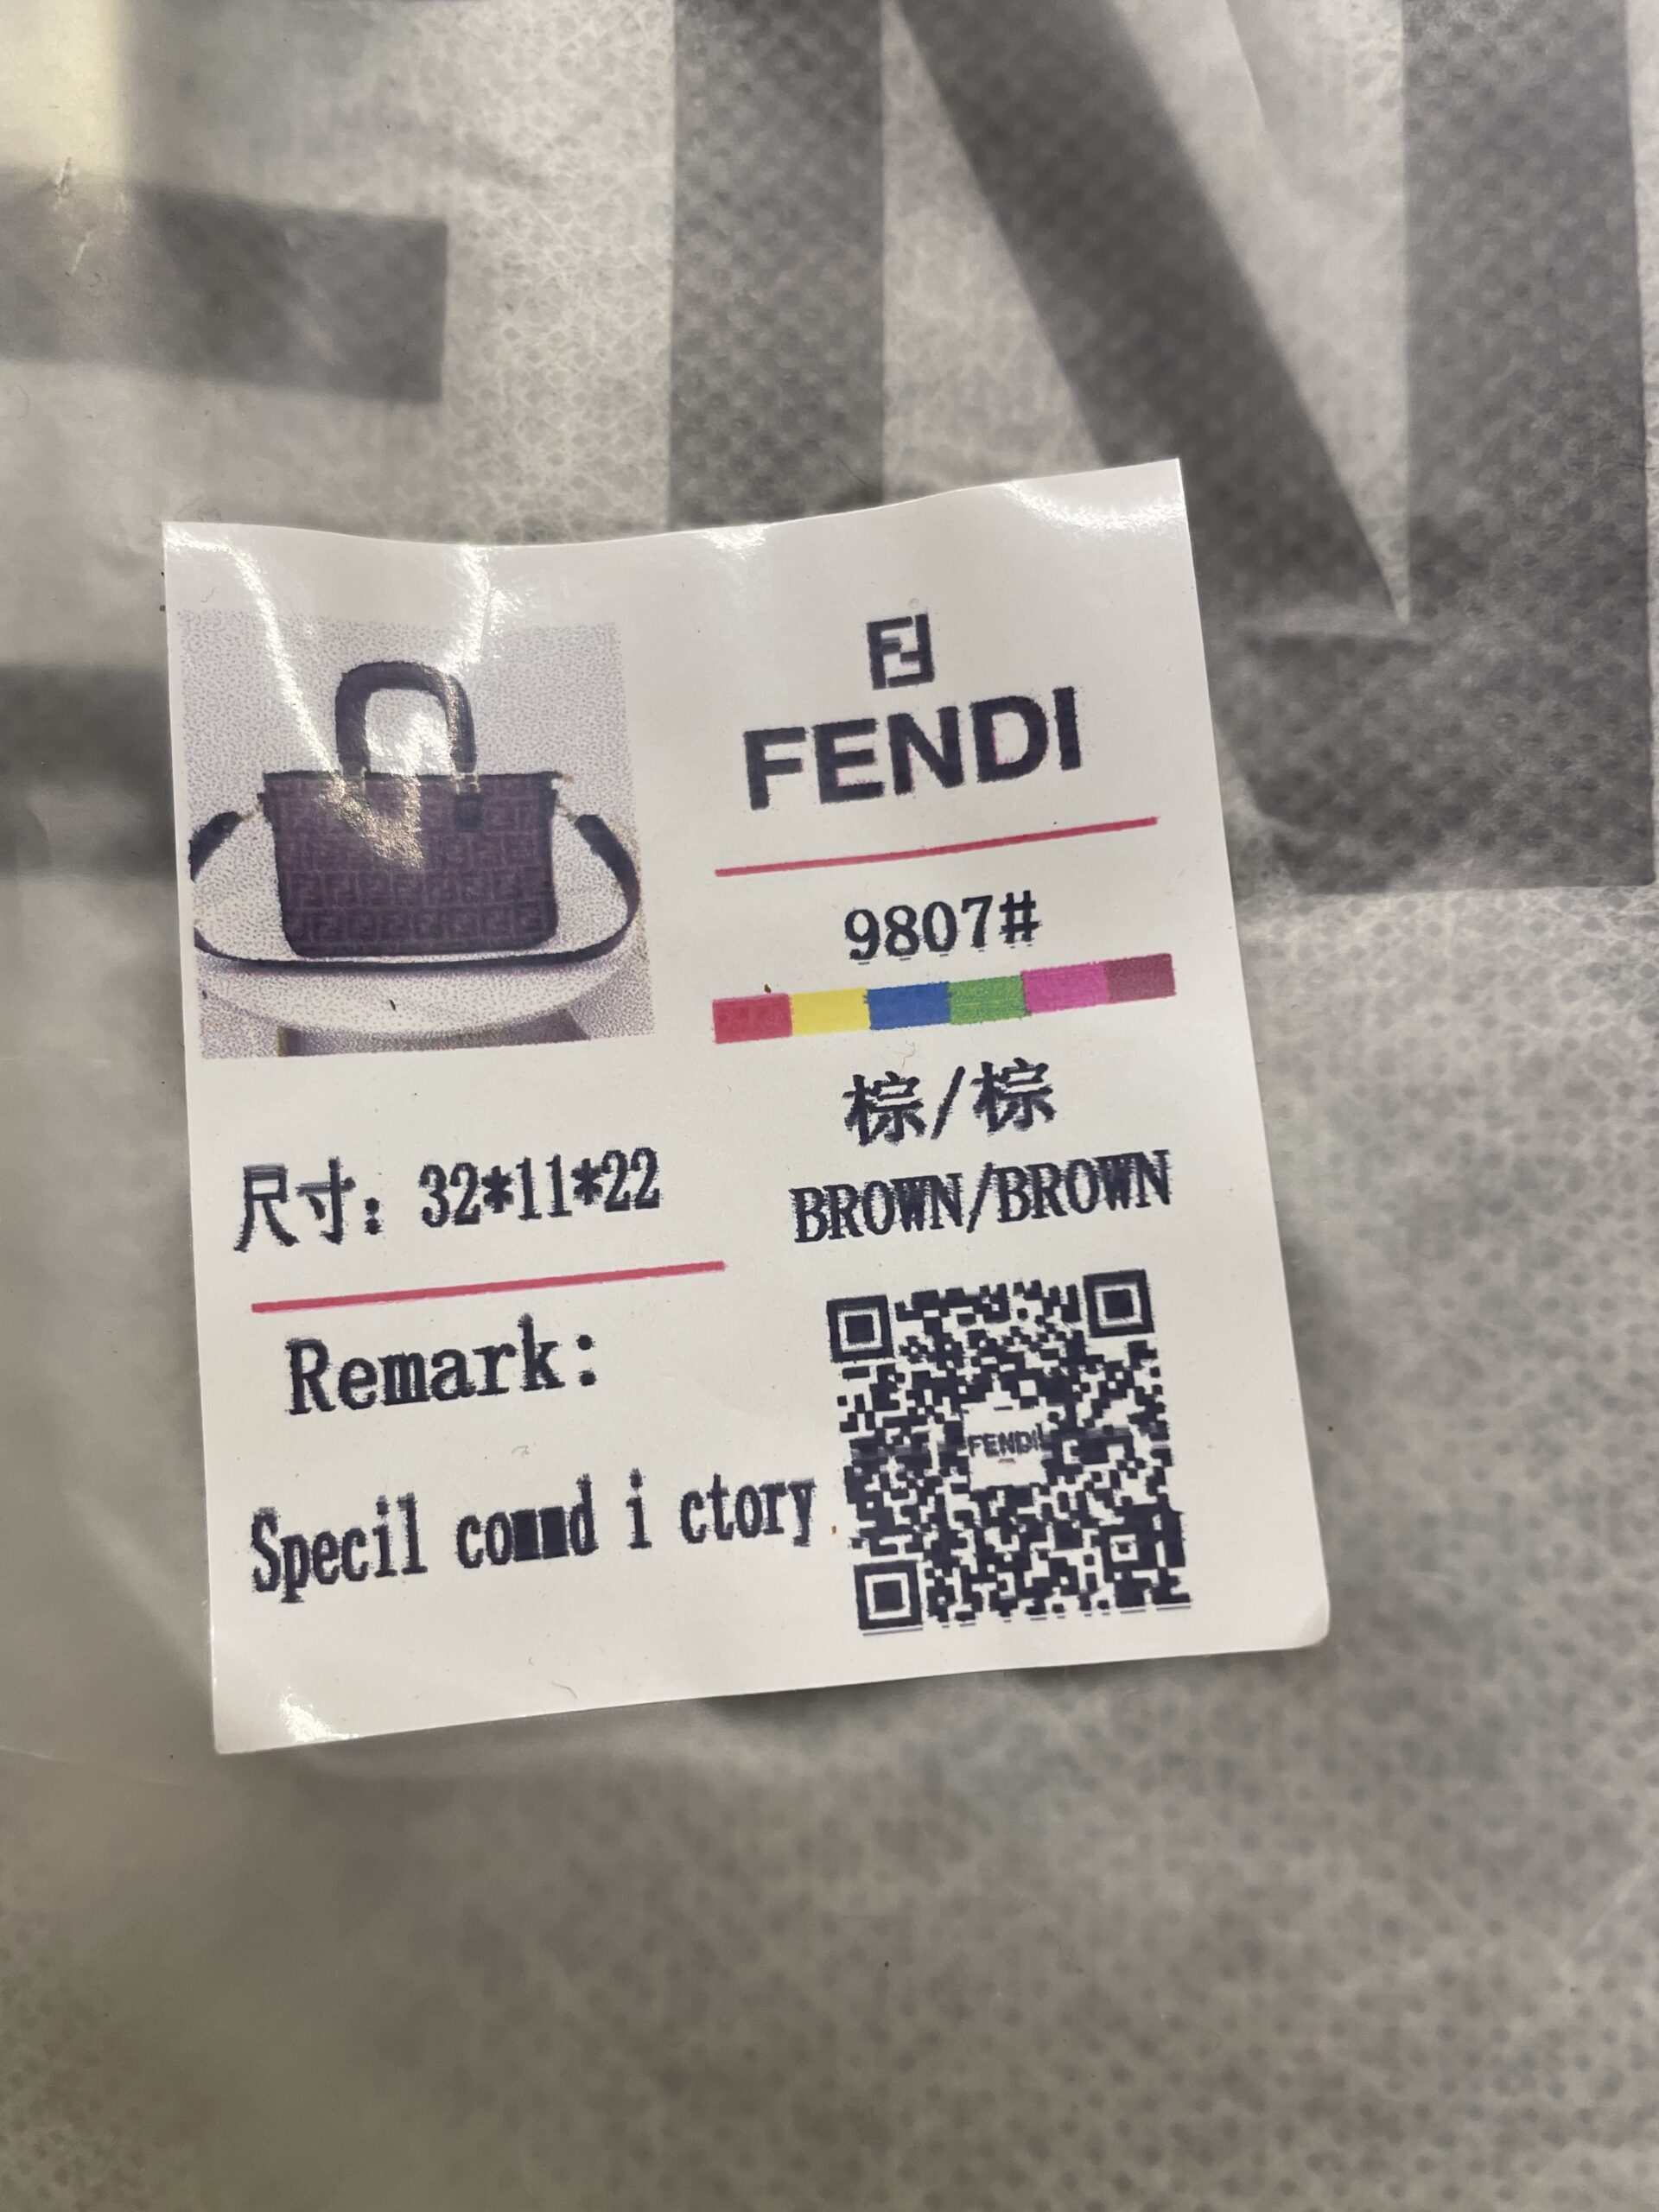 Fendi Supreme + Brand Details